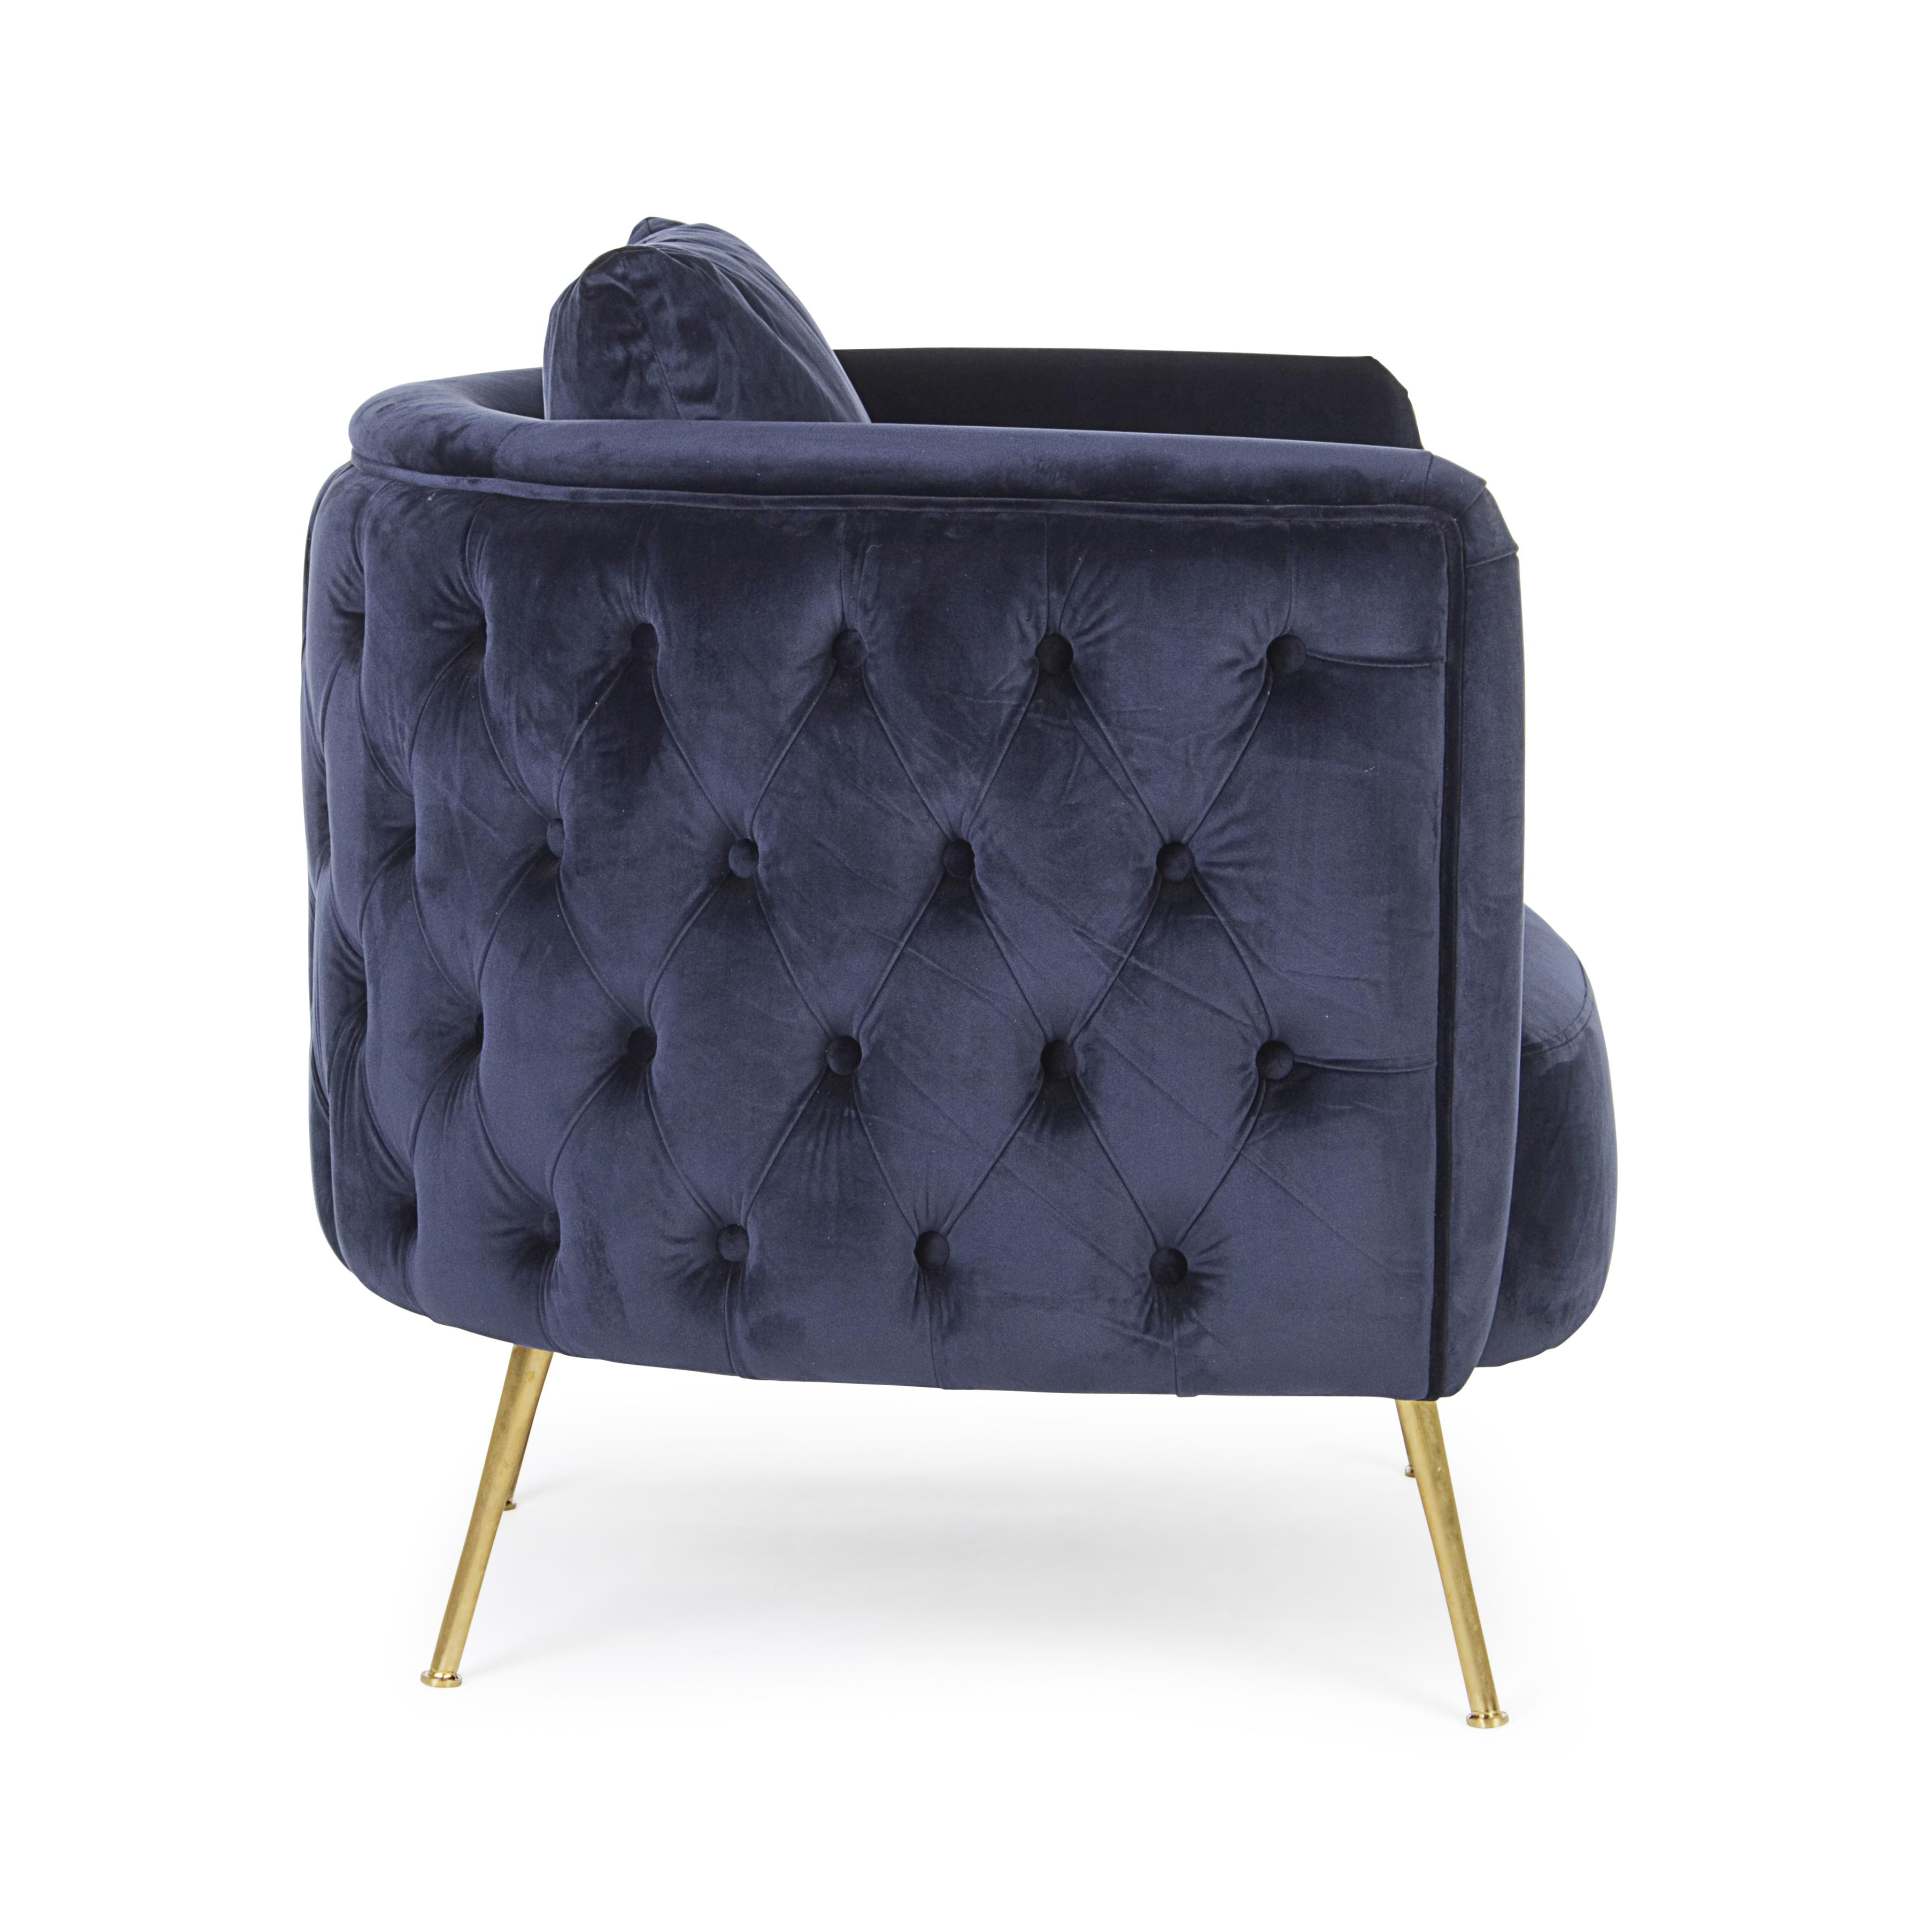 Der Sessel Tenbury überzeugt mit seinem modernen Design. Gefertigt wurde er aus Stoff in Samt-Optik, welcher einen blauen Farbton besitzt. Das Gestell ist aus Metall und hat eine goldene Farbe. Der Sessel besitzt eine Sitzhöhe von 42 cm. Die Breite beträg